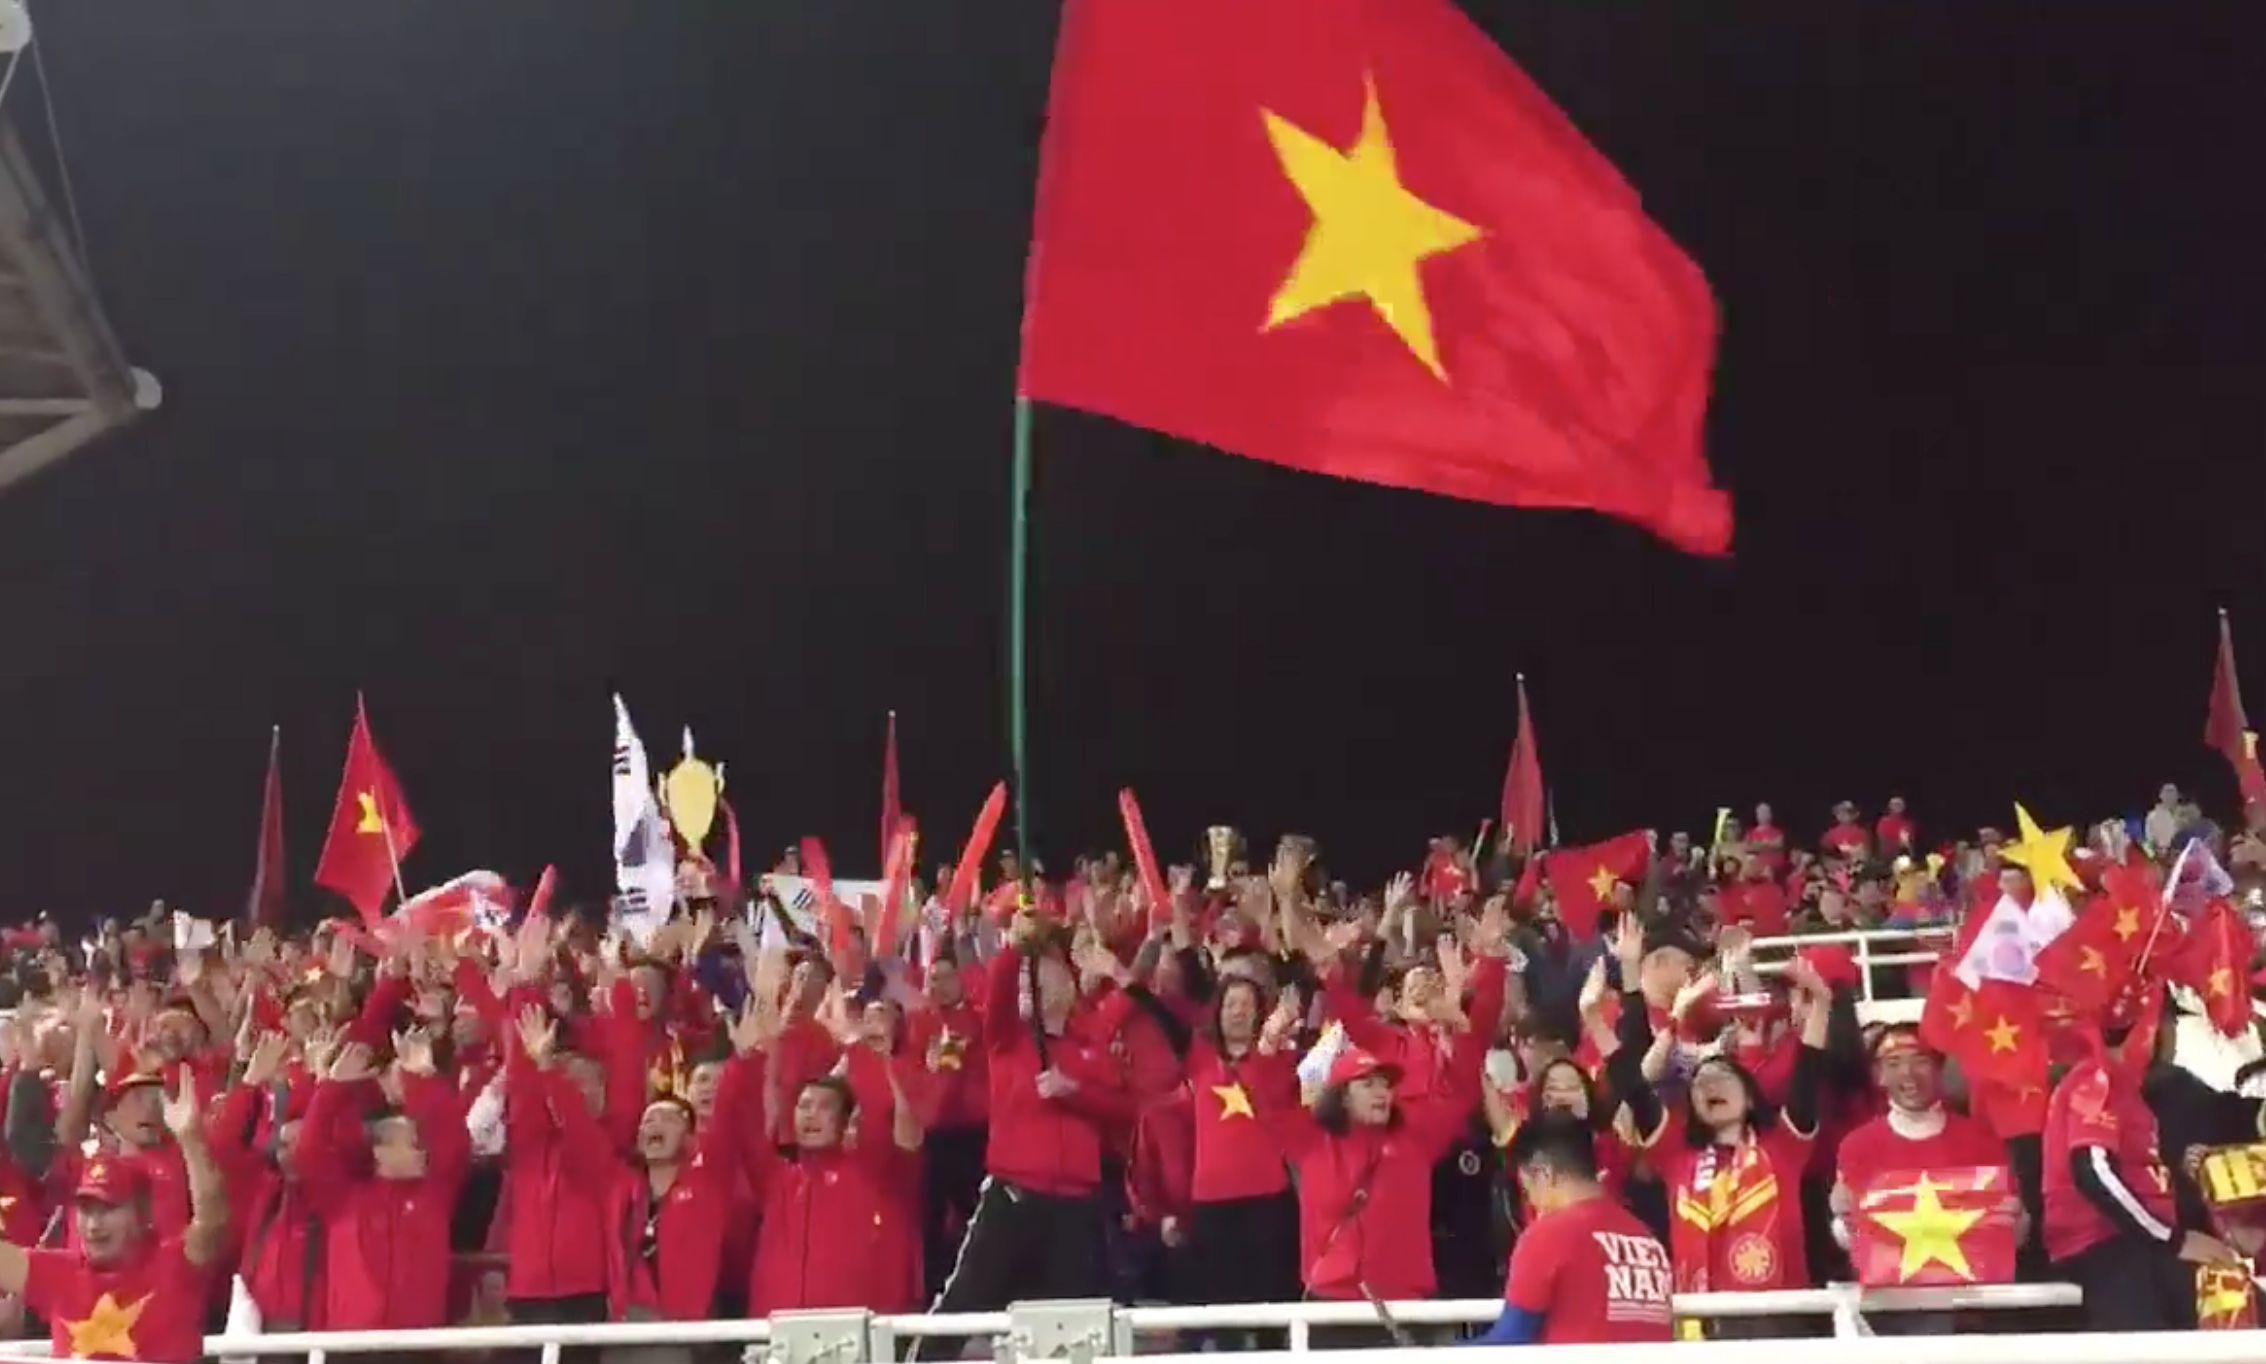 Lá cờ Việt Nam với những đường nét mềm mại, ý nghĩa sâu sắc luôn là niềm tự hào của người dân Việt Nam. Những bức ảnh về lá cờ trắng đỏ cùng với những nét chấm phá đặc sắc sẽ đưa bạn đến với cảm xúc sâu lắng và giúp bạn yêu quê hương mình hơn.